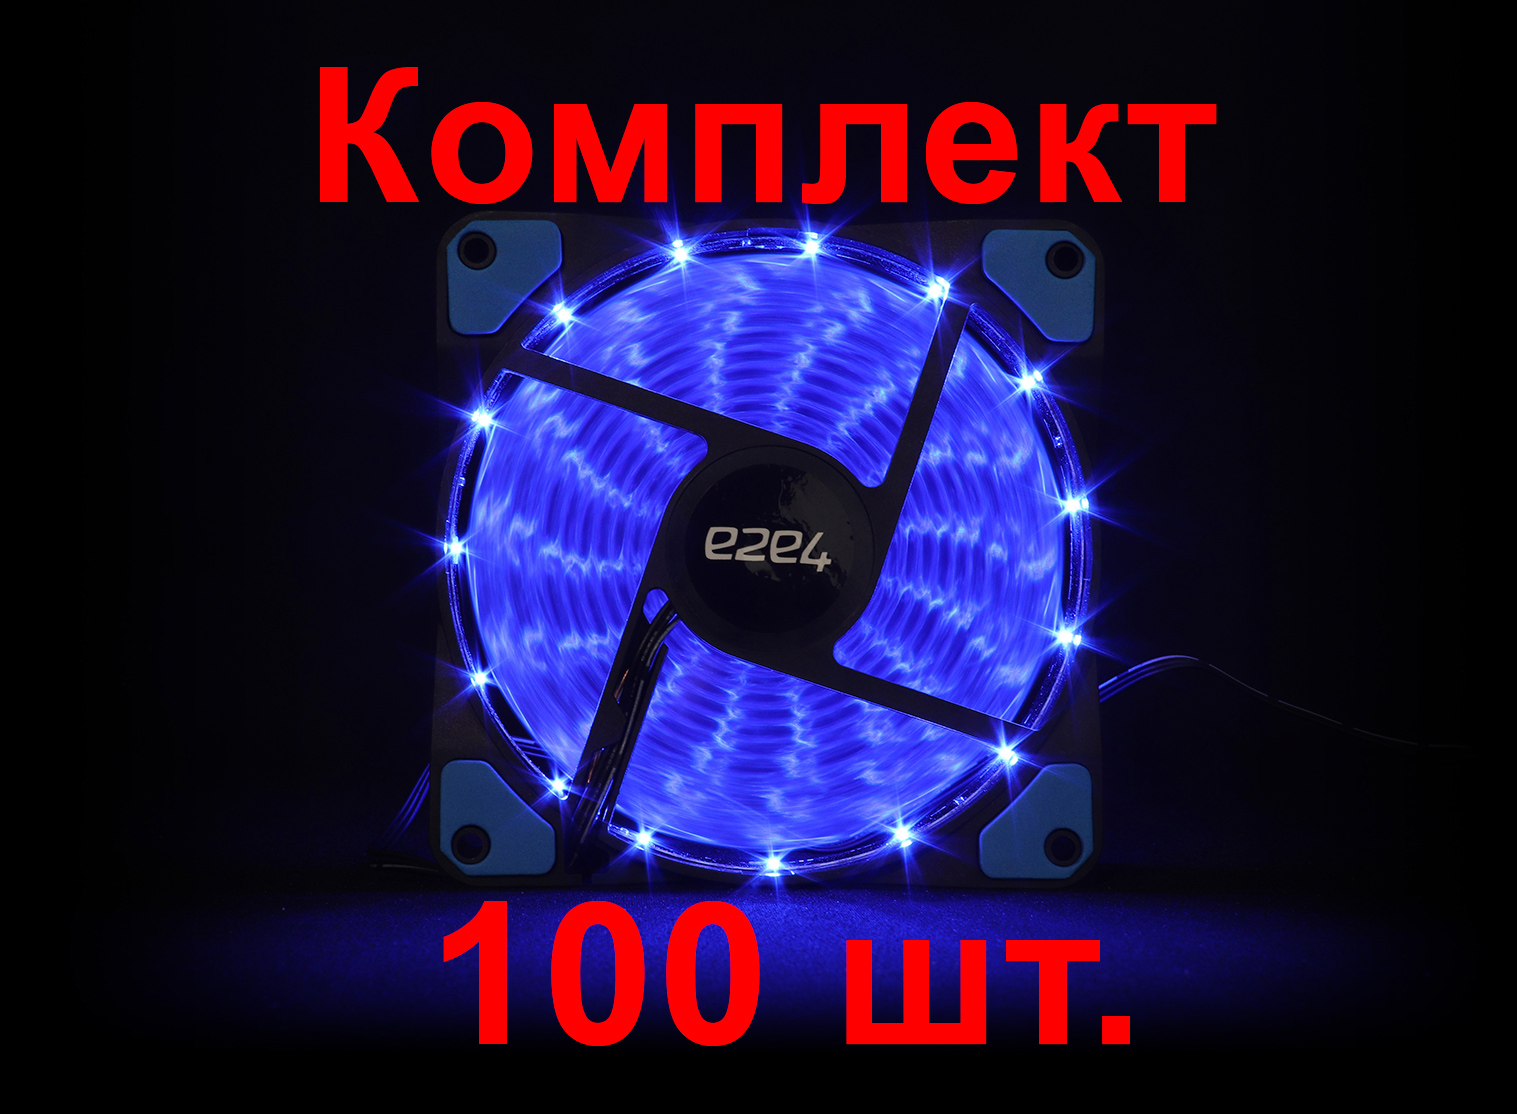 Комплект вентиляторов e2e4, 120мм, 1200rpm, 20 дБА, 3pin+Molex, 100шт, синий (OT-F120-3PM-LED-BL-BNDL)